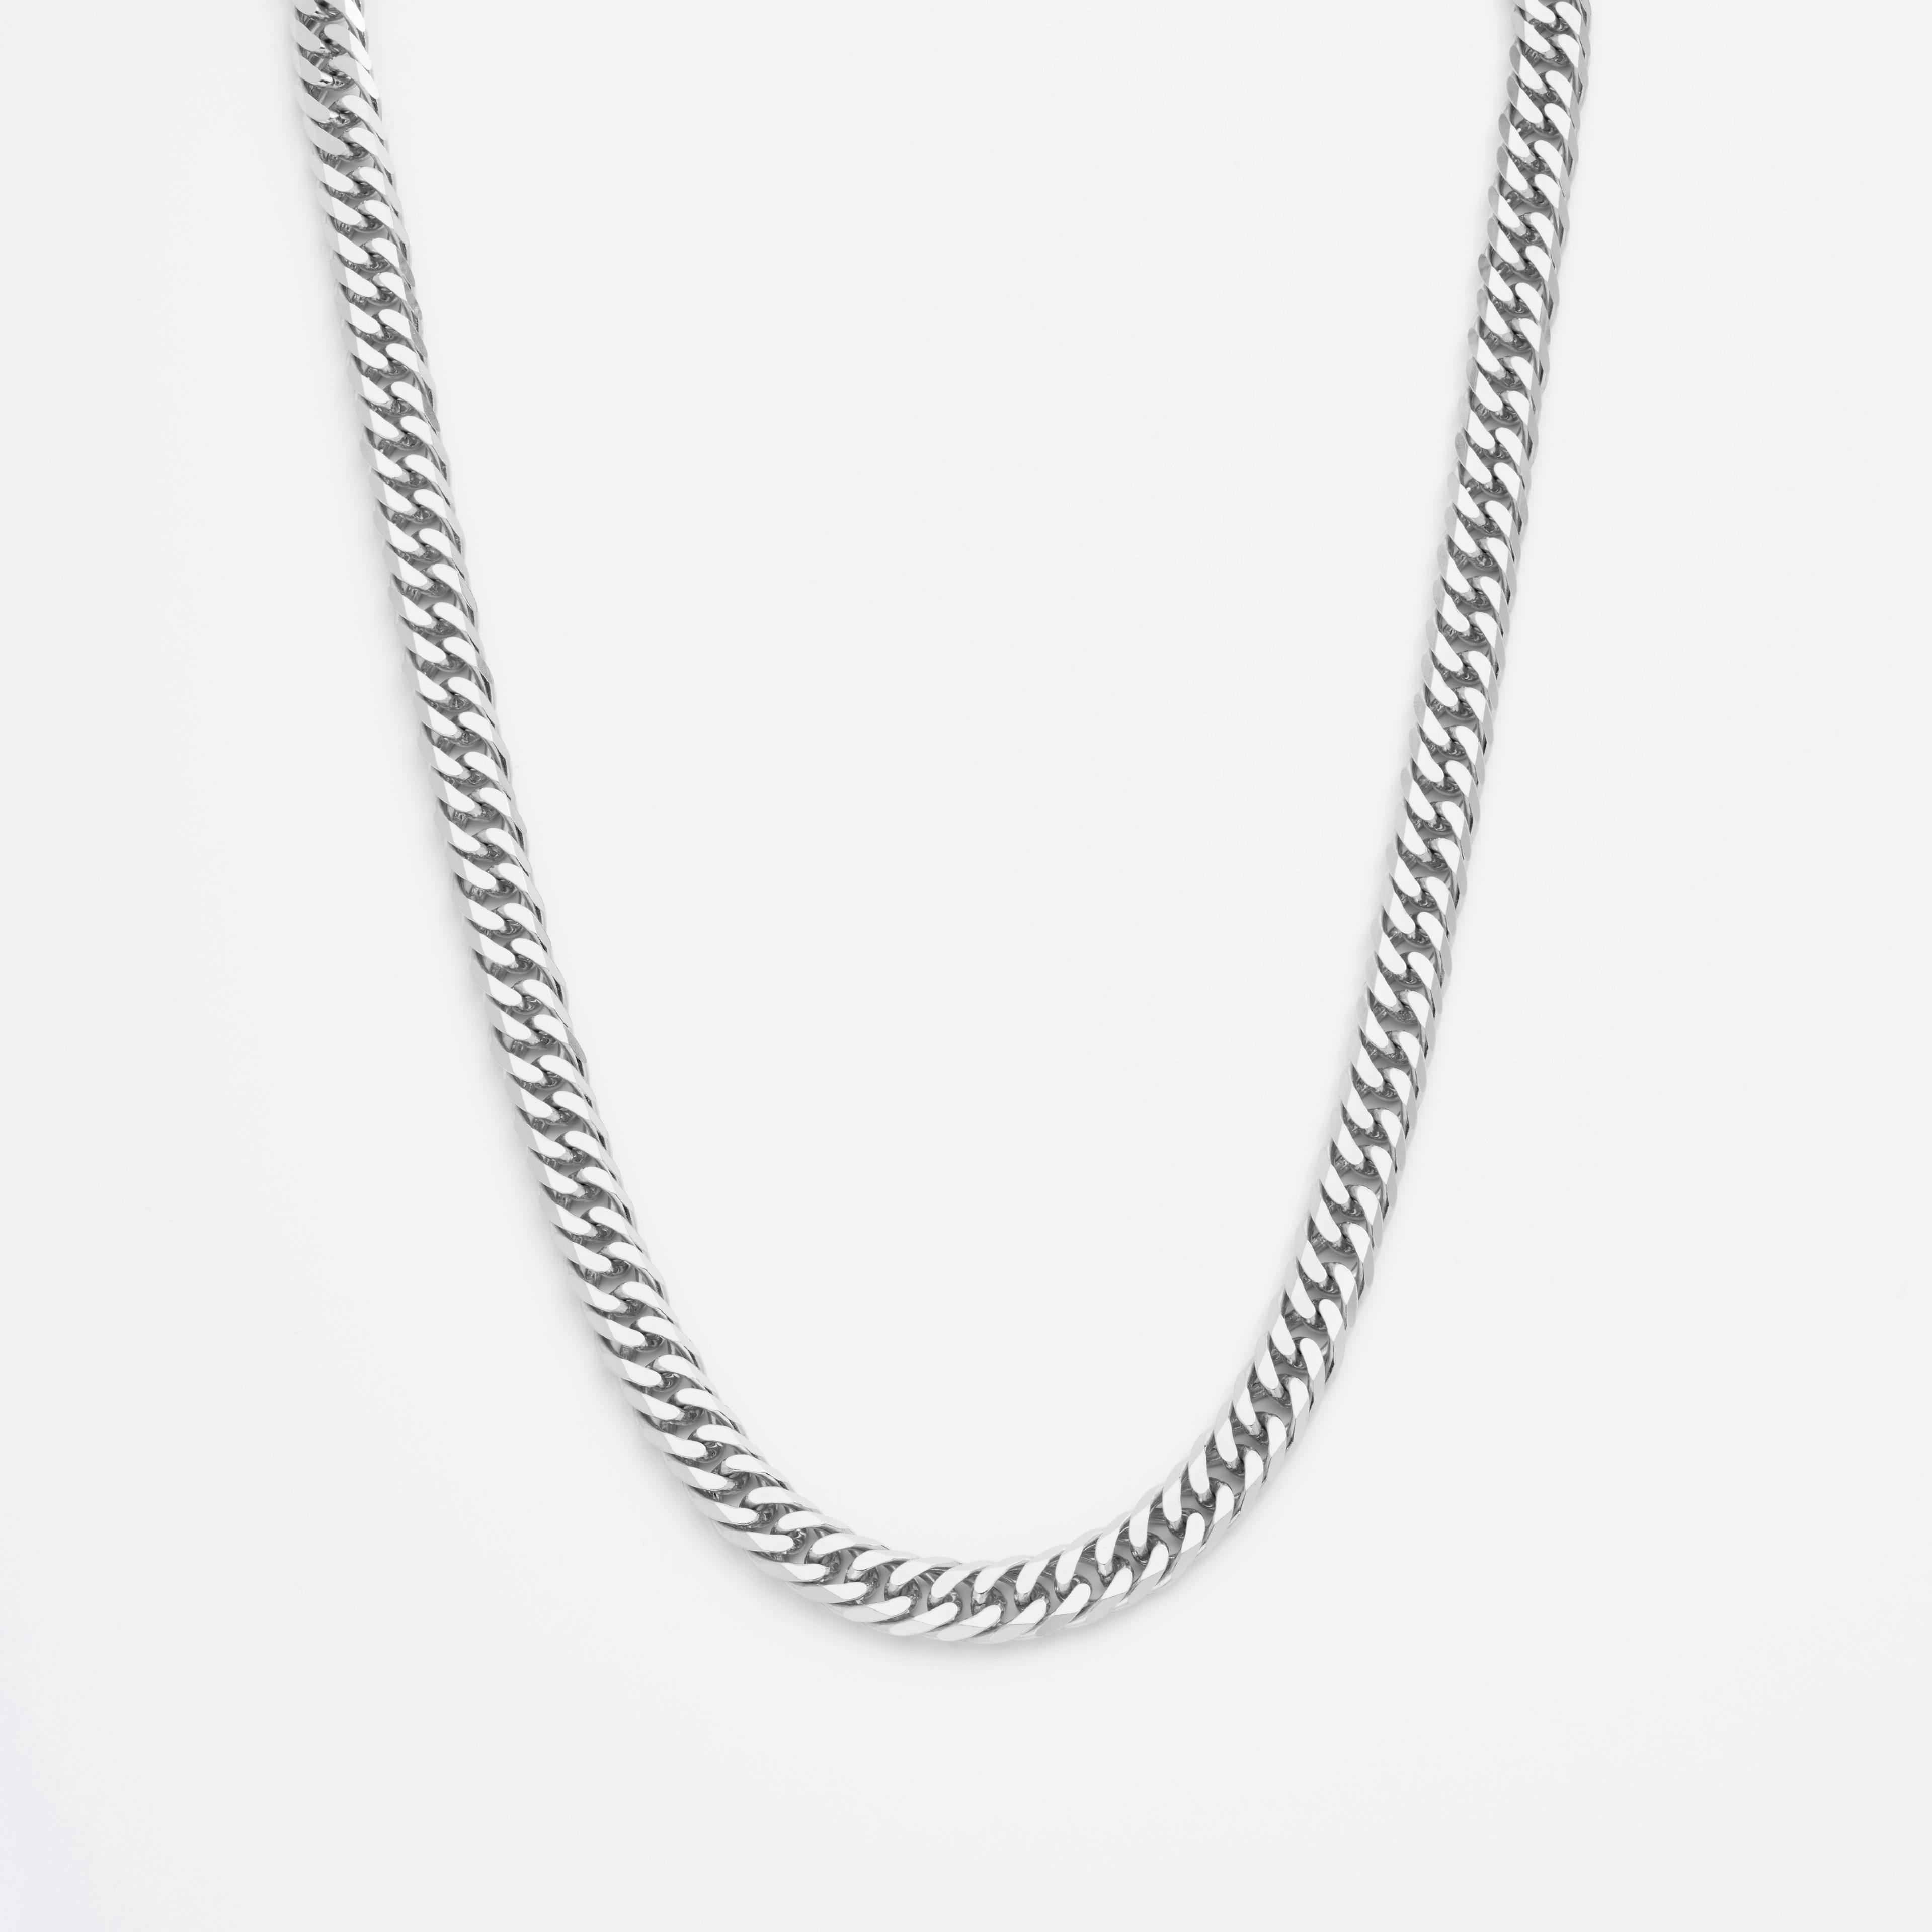 Shop Platinum Necklace Chains Statement Diamond Cut Double Curb Chain Necklace